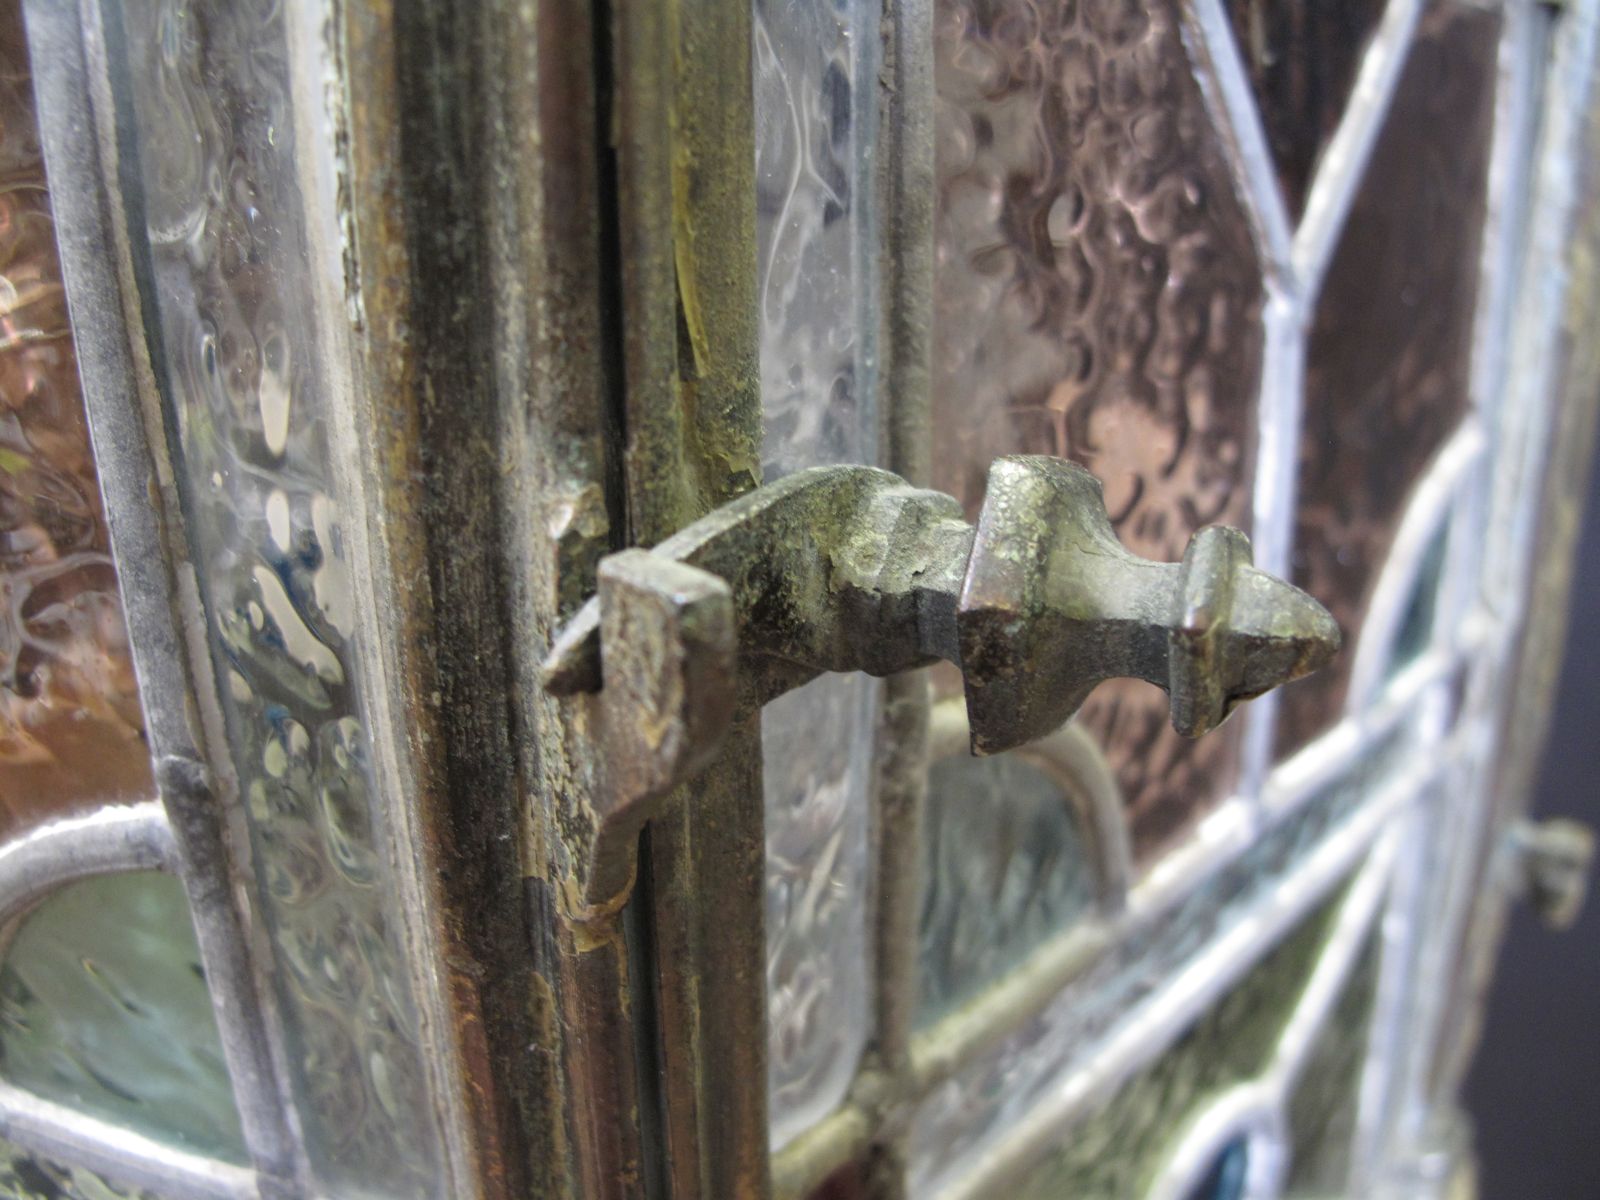 view showing door locking mechanism